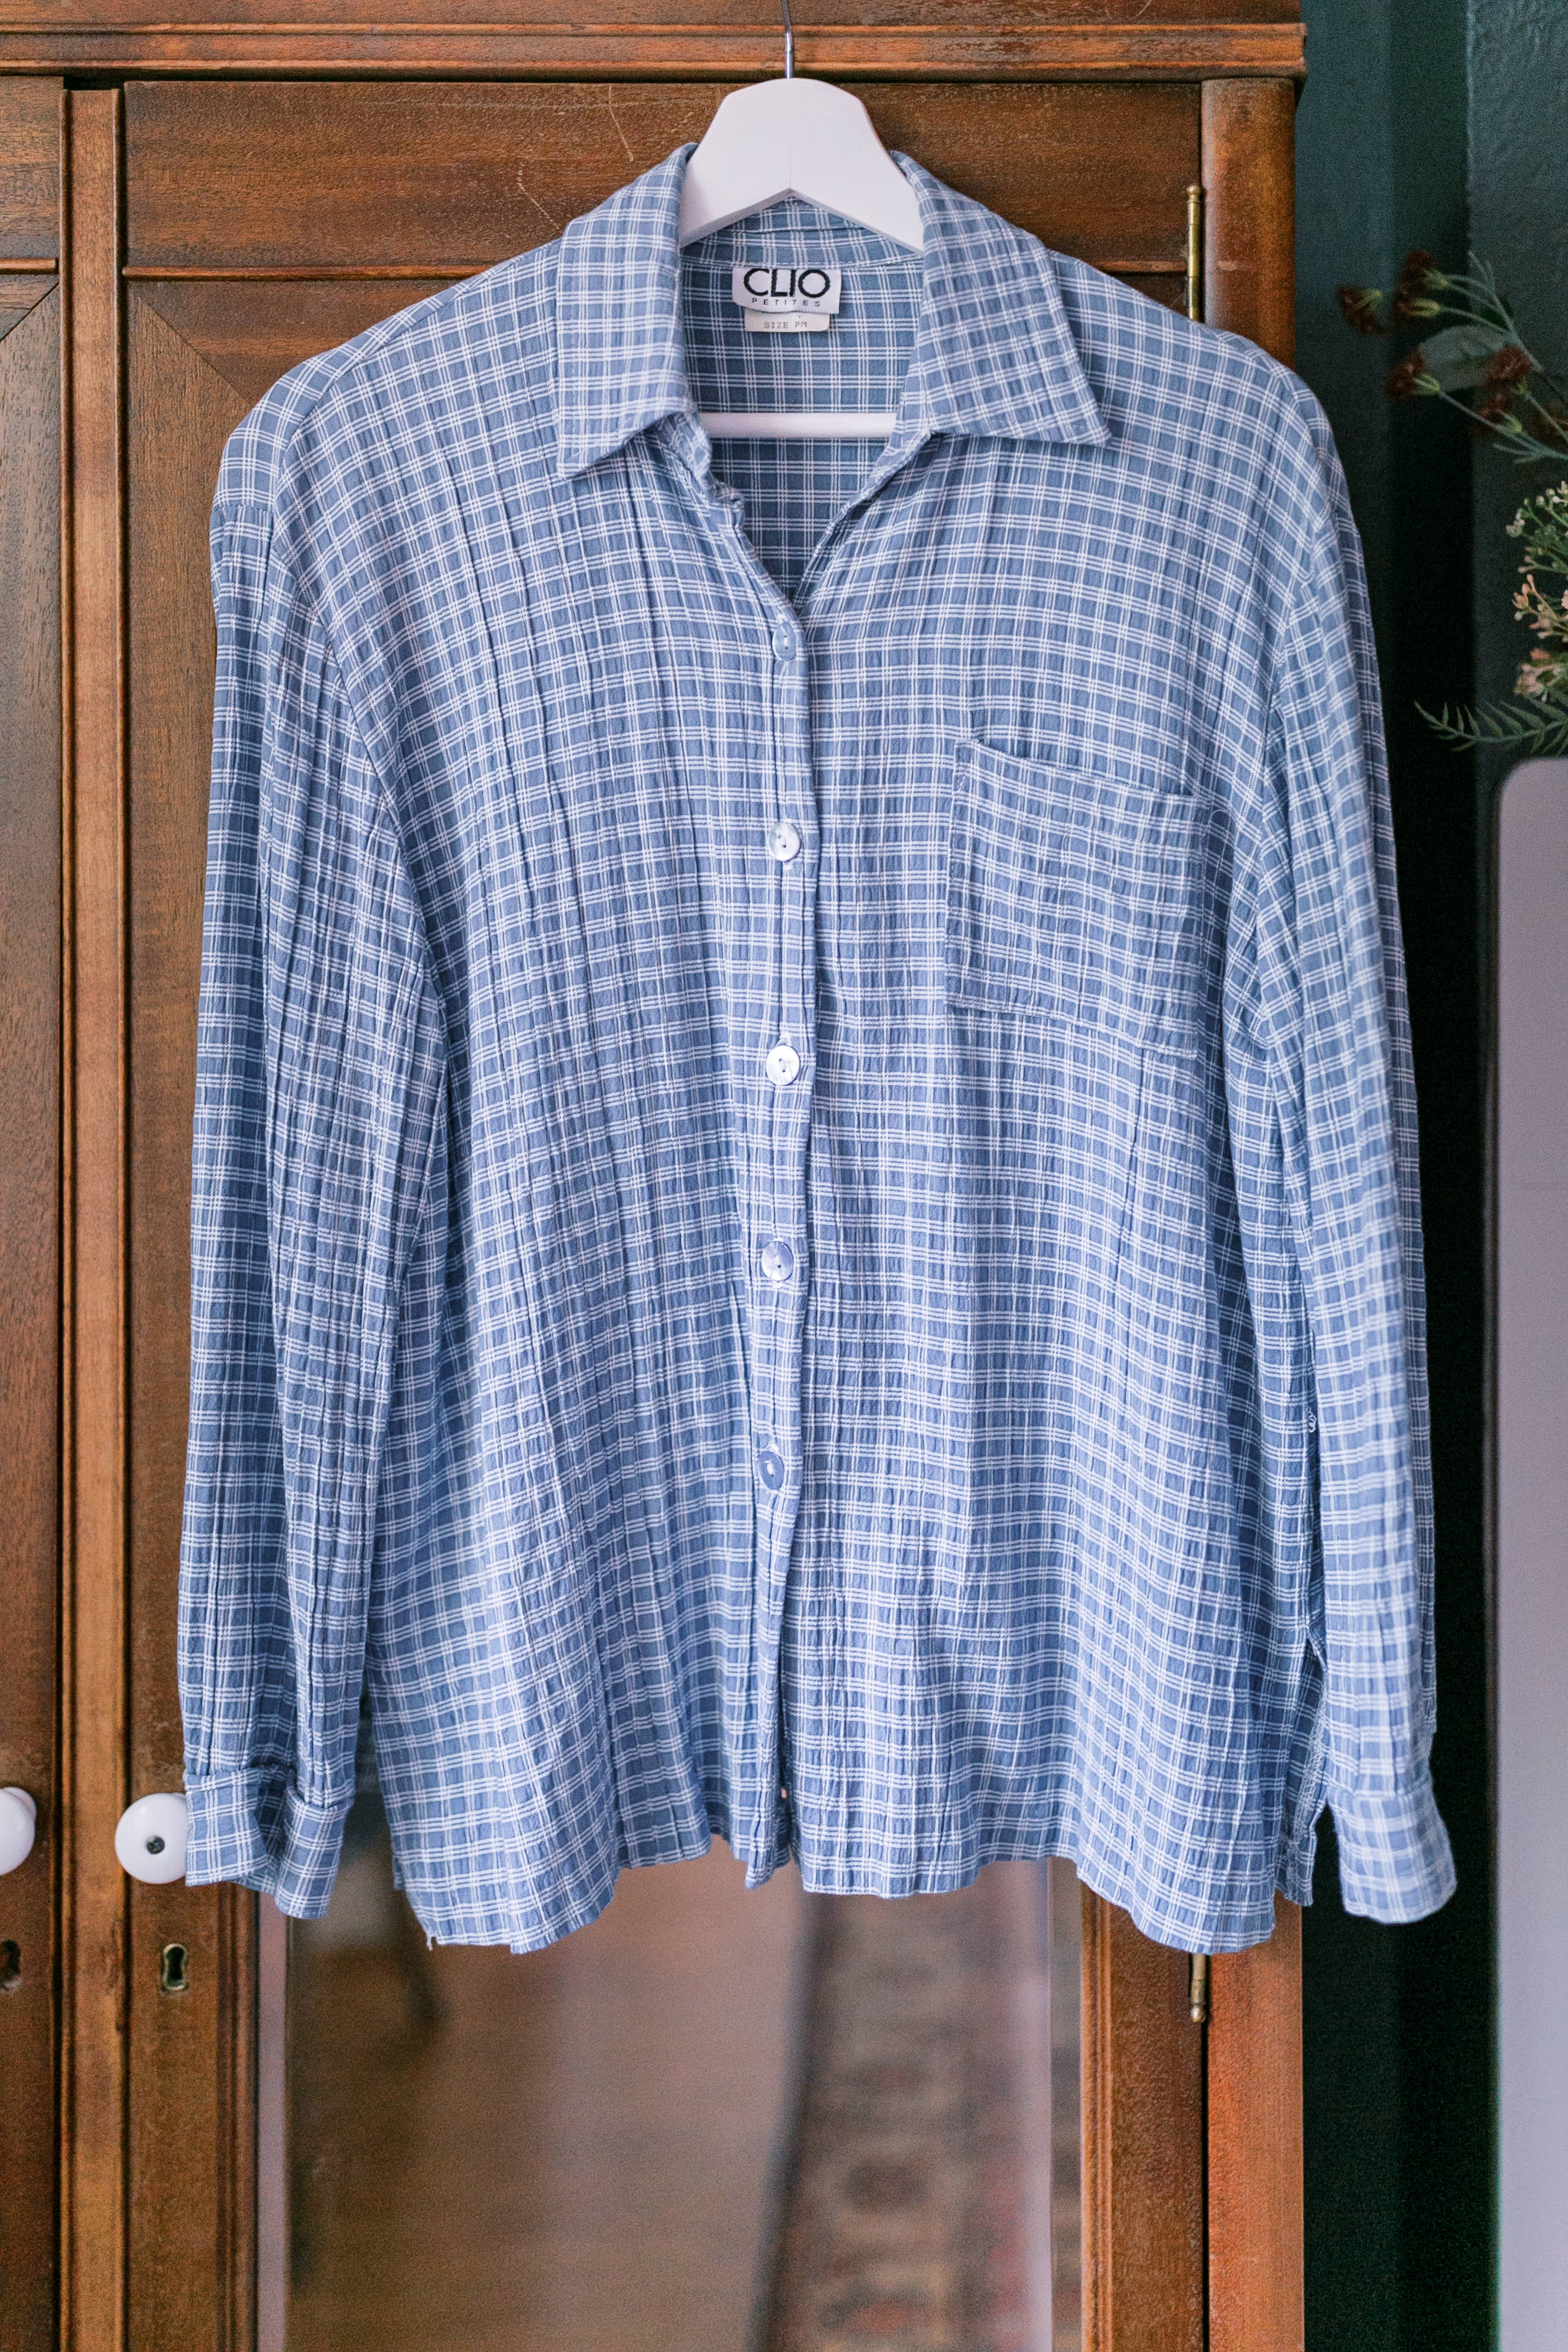 90s Blue Plaid Collard Shirt Made in USA